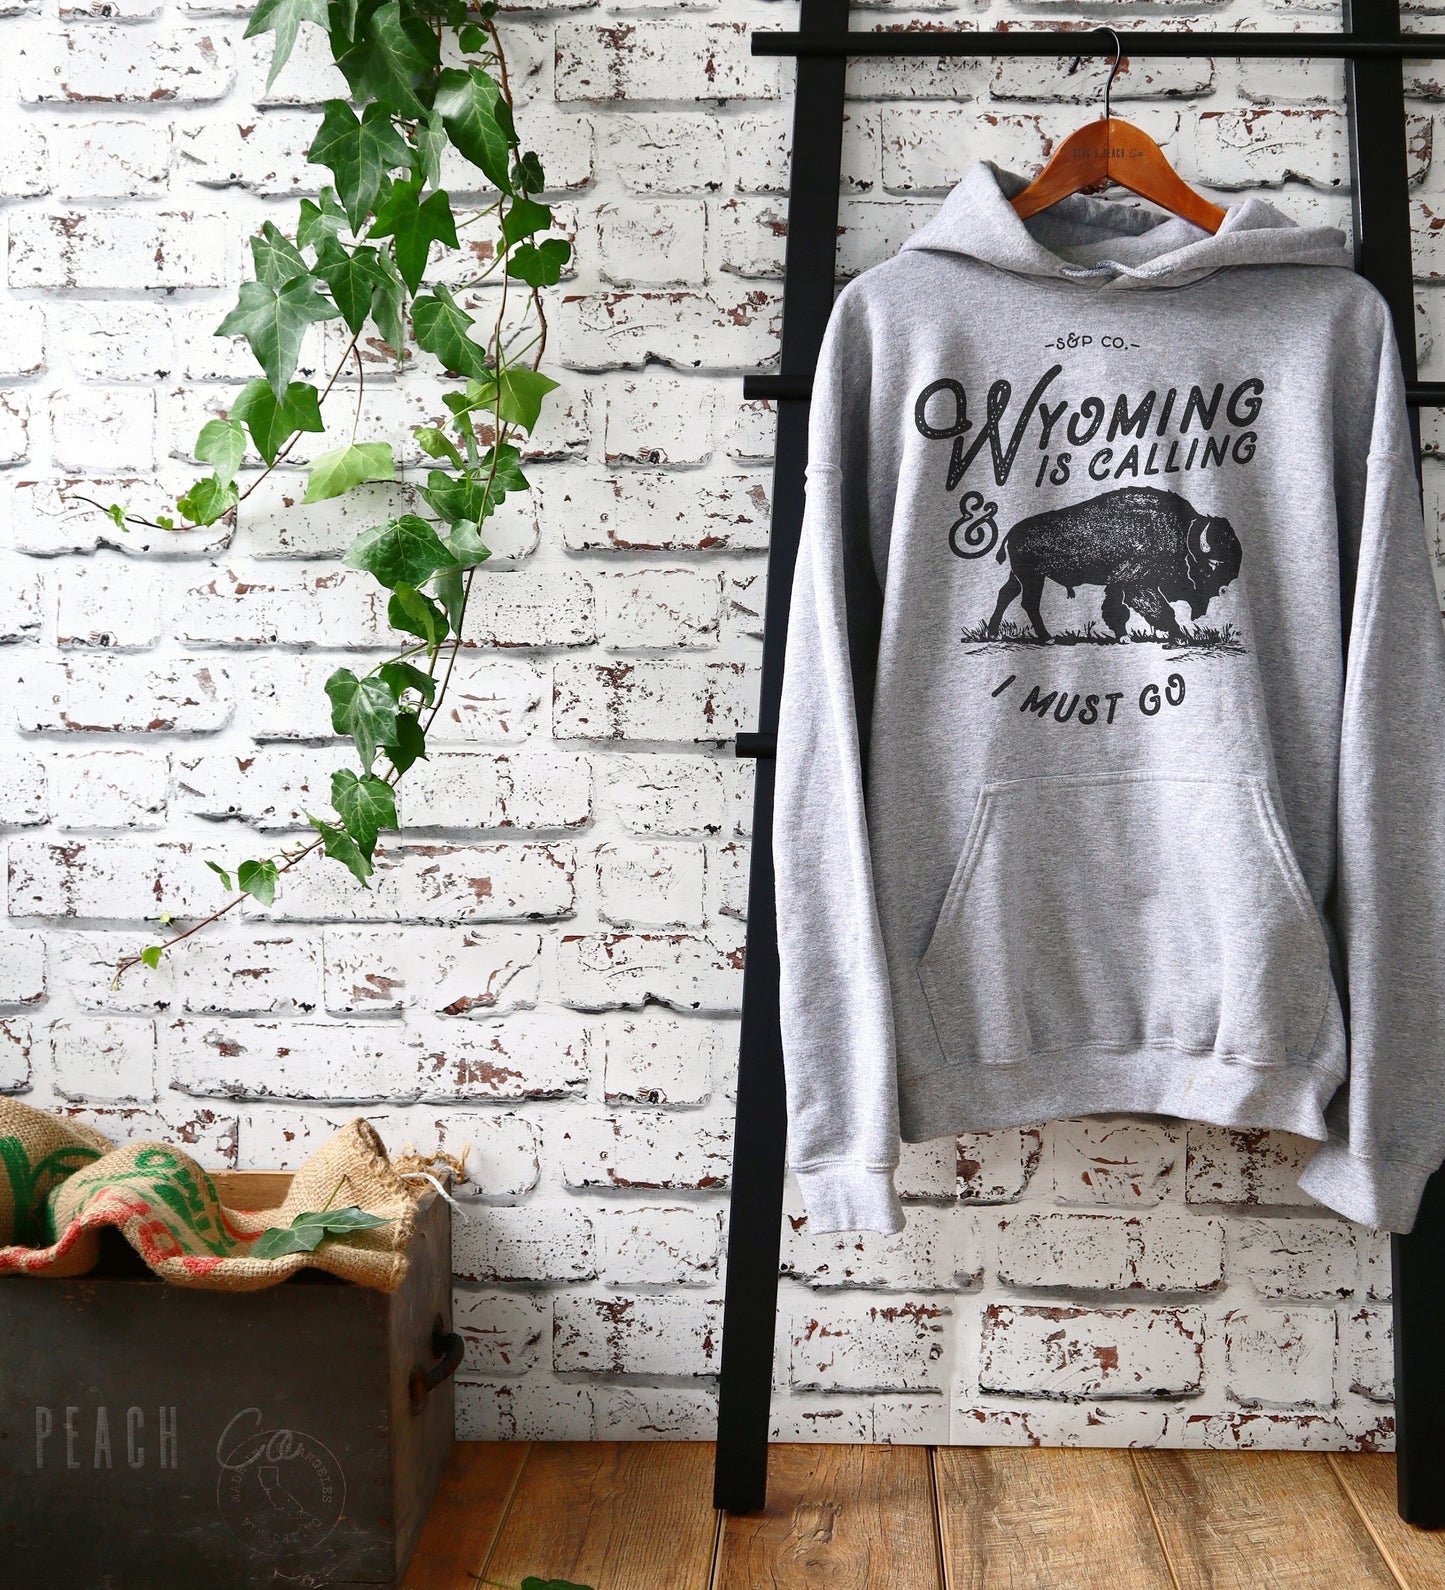 Wyoming Is Calling Hoodie - Wyoming Shirt, Buffalo Shirt, Bison Shirt, State Shirt, Cheyenne Shirt, National Park Shirt, Wyoming Sweatshirt